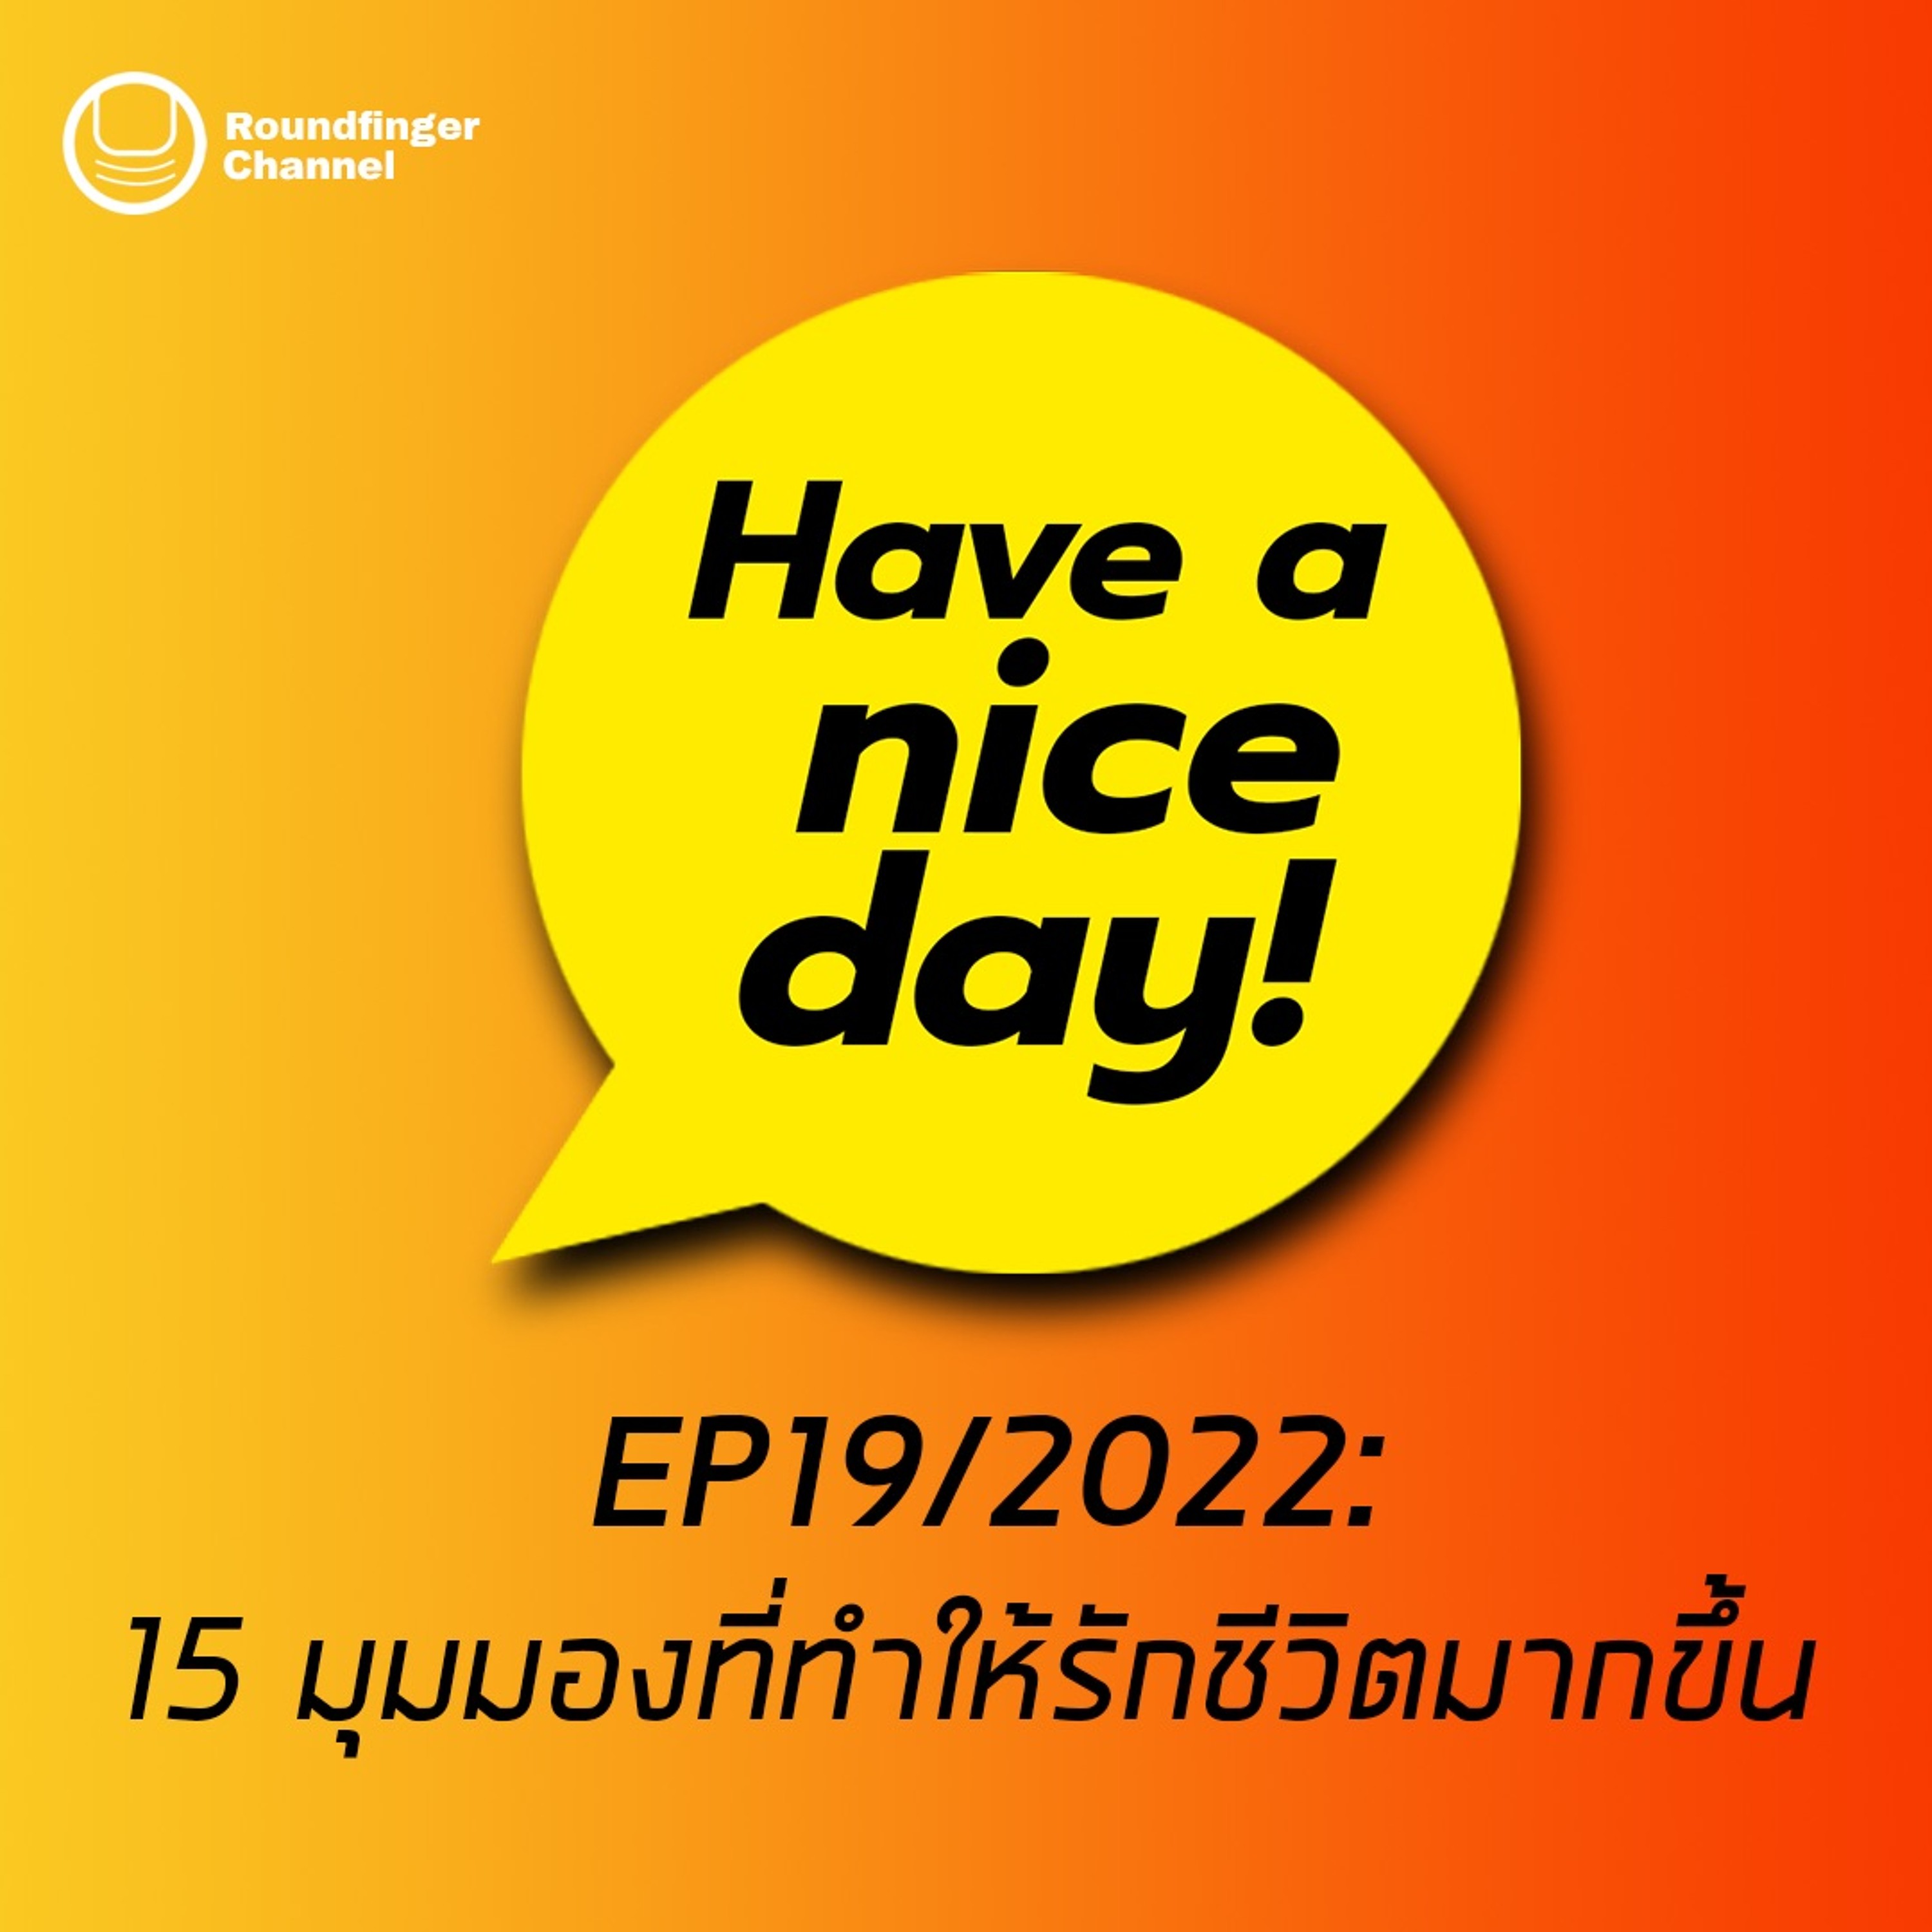 15 มุมมองที่ทำให้รักชีวิตมากขึ้น | Have A Nice Day! EP19 2022